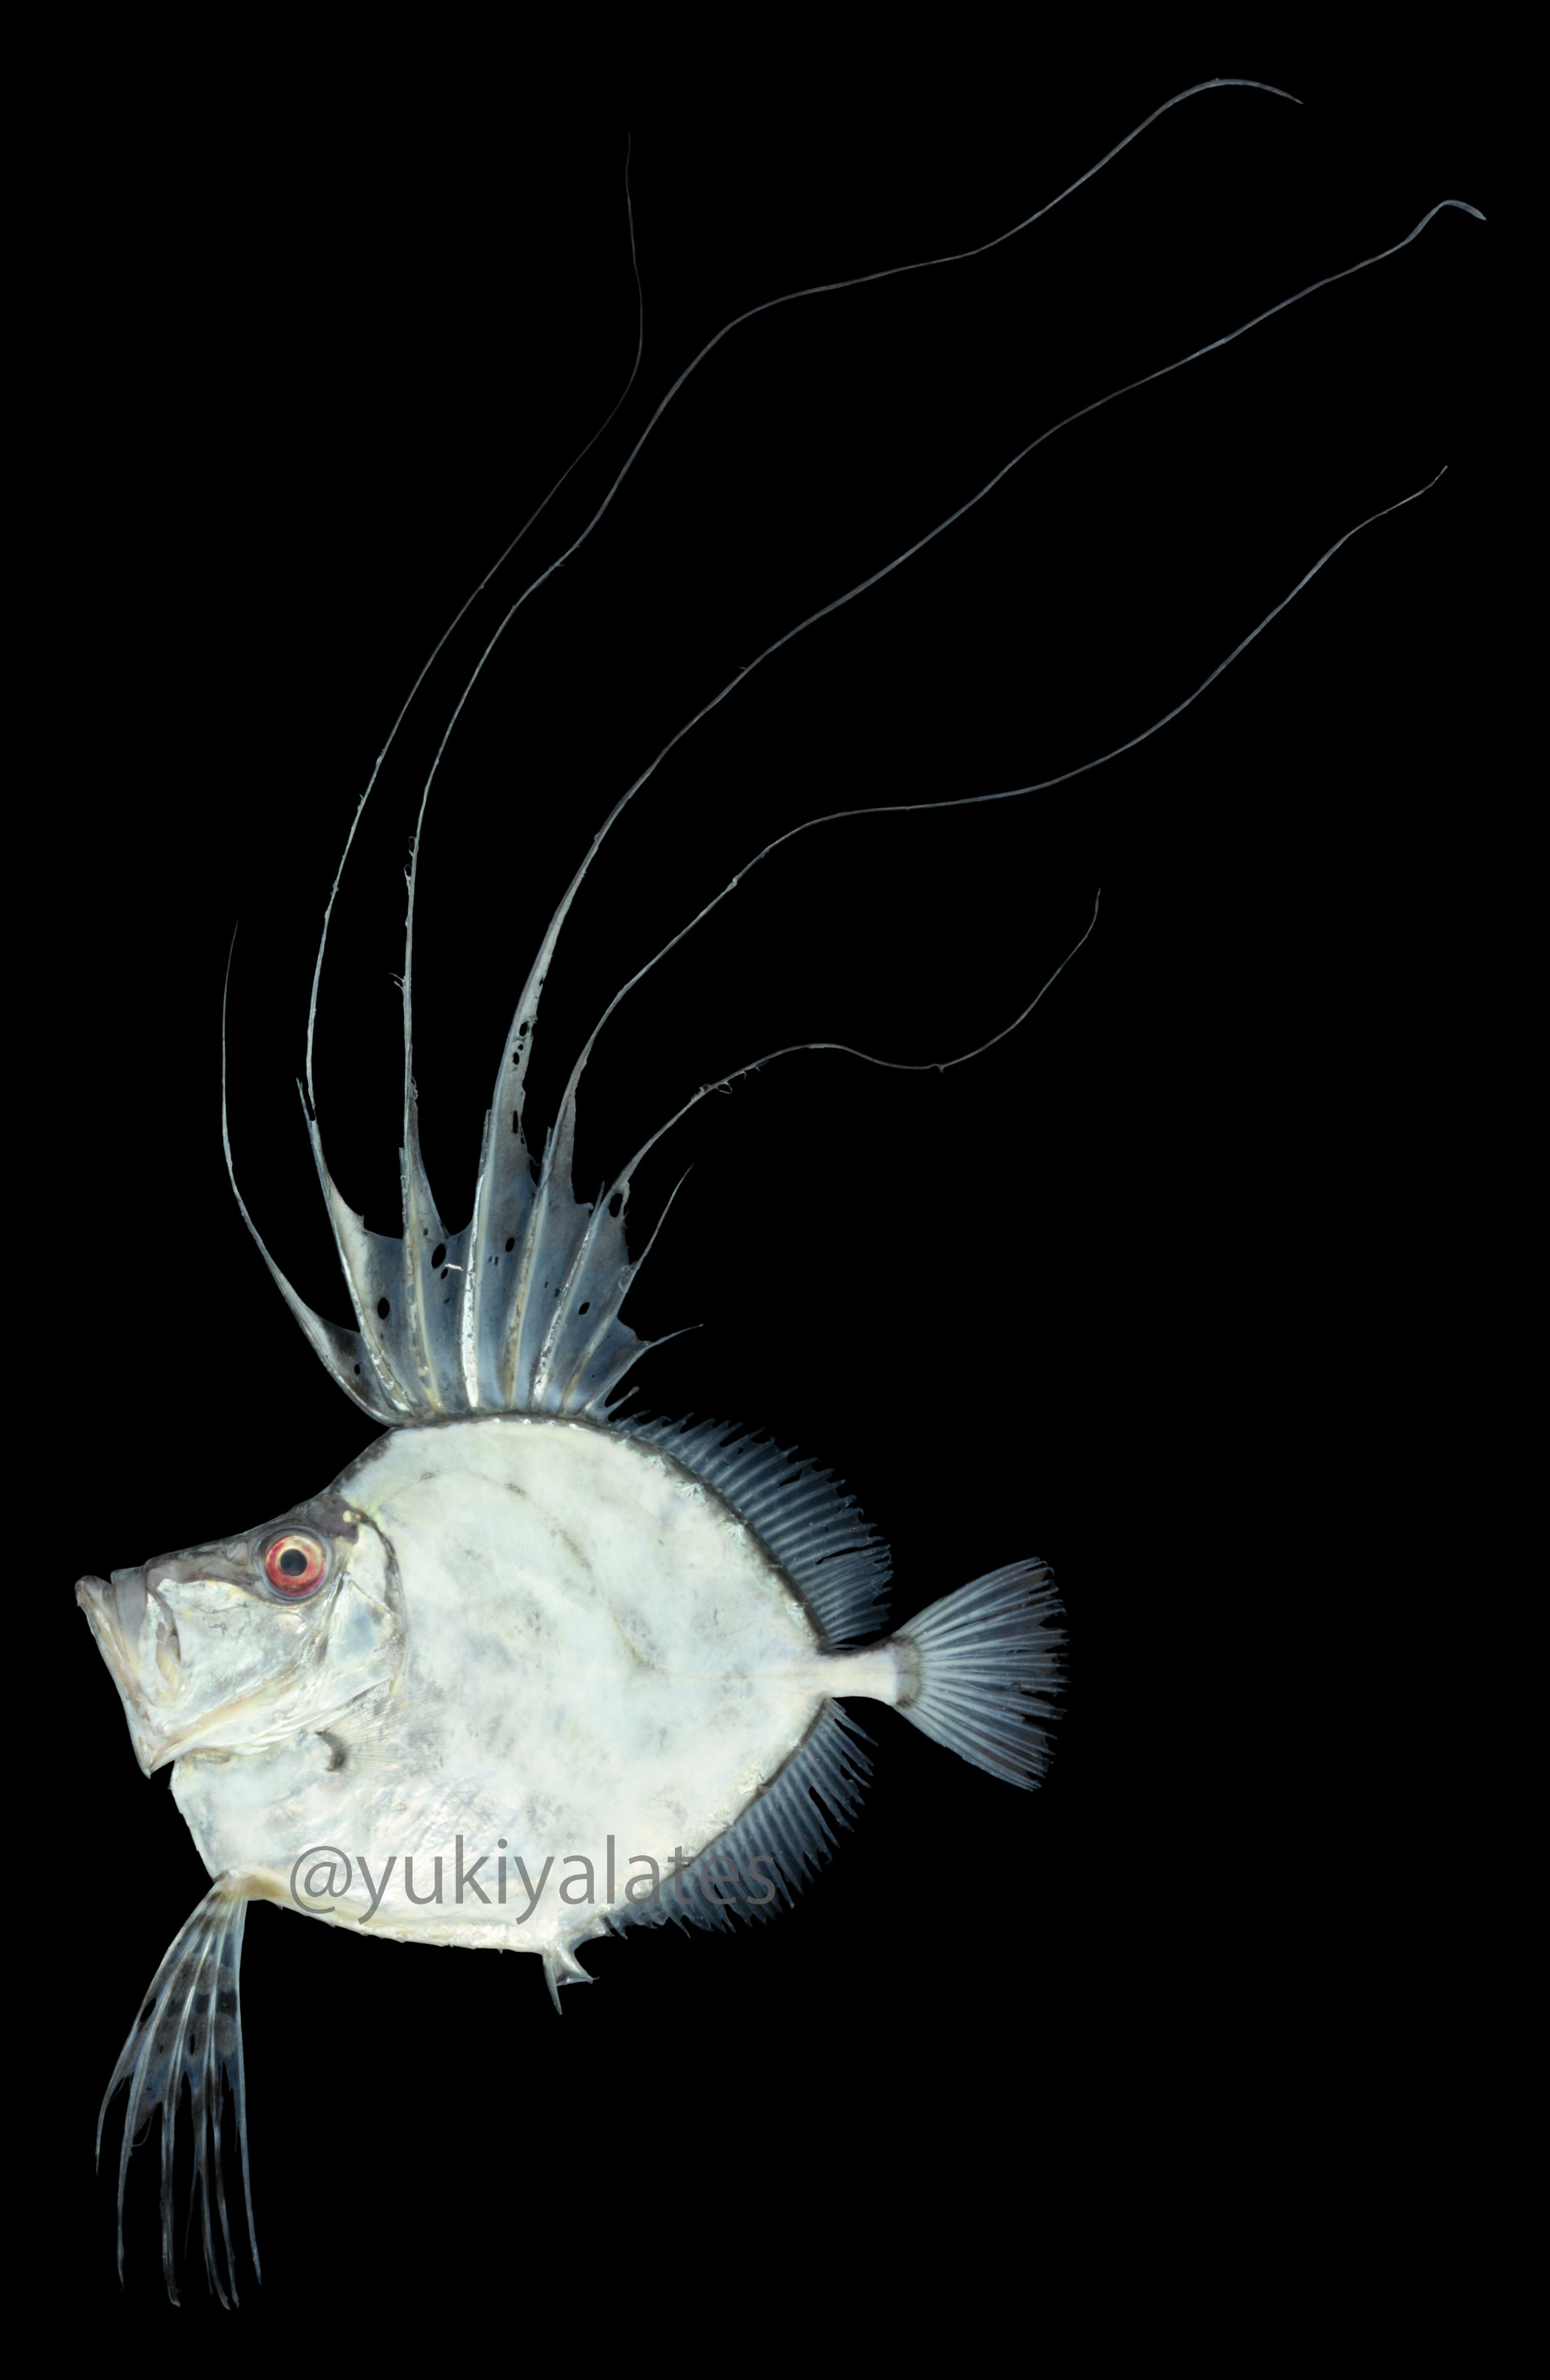 ユキヤ イトヒキカガミダイ Zenopsis Filamentosa 深海魚の中でトップクラスに好き 糸状のひれに気が付いてひれを立て こんなかっこいい魚いるのかと感動した カガミダイと食べ比べしたら味や食感が全く違った イトヒキの方がうまかった 門川の魚